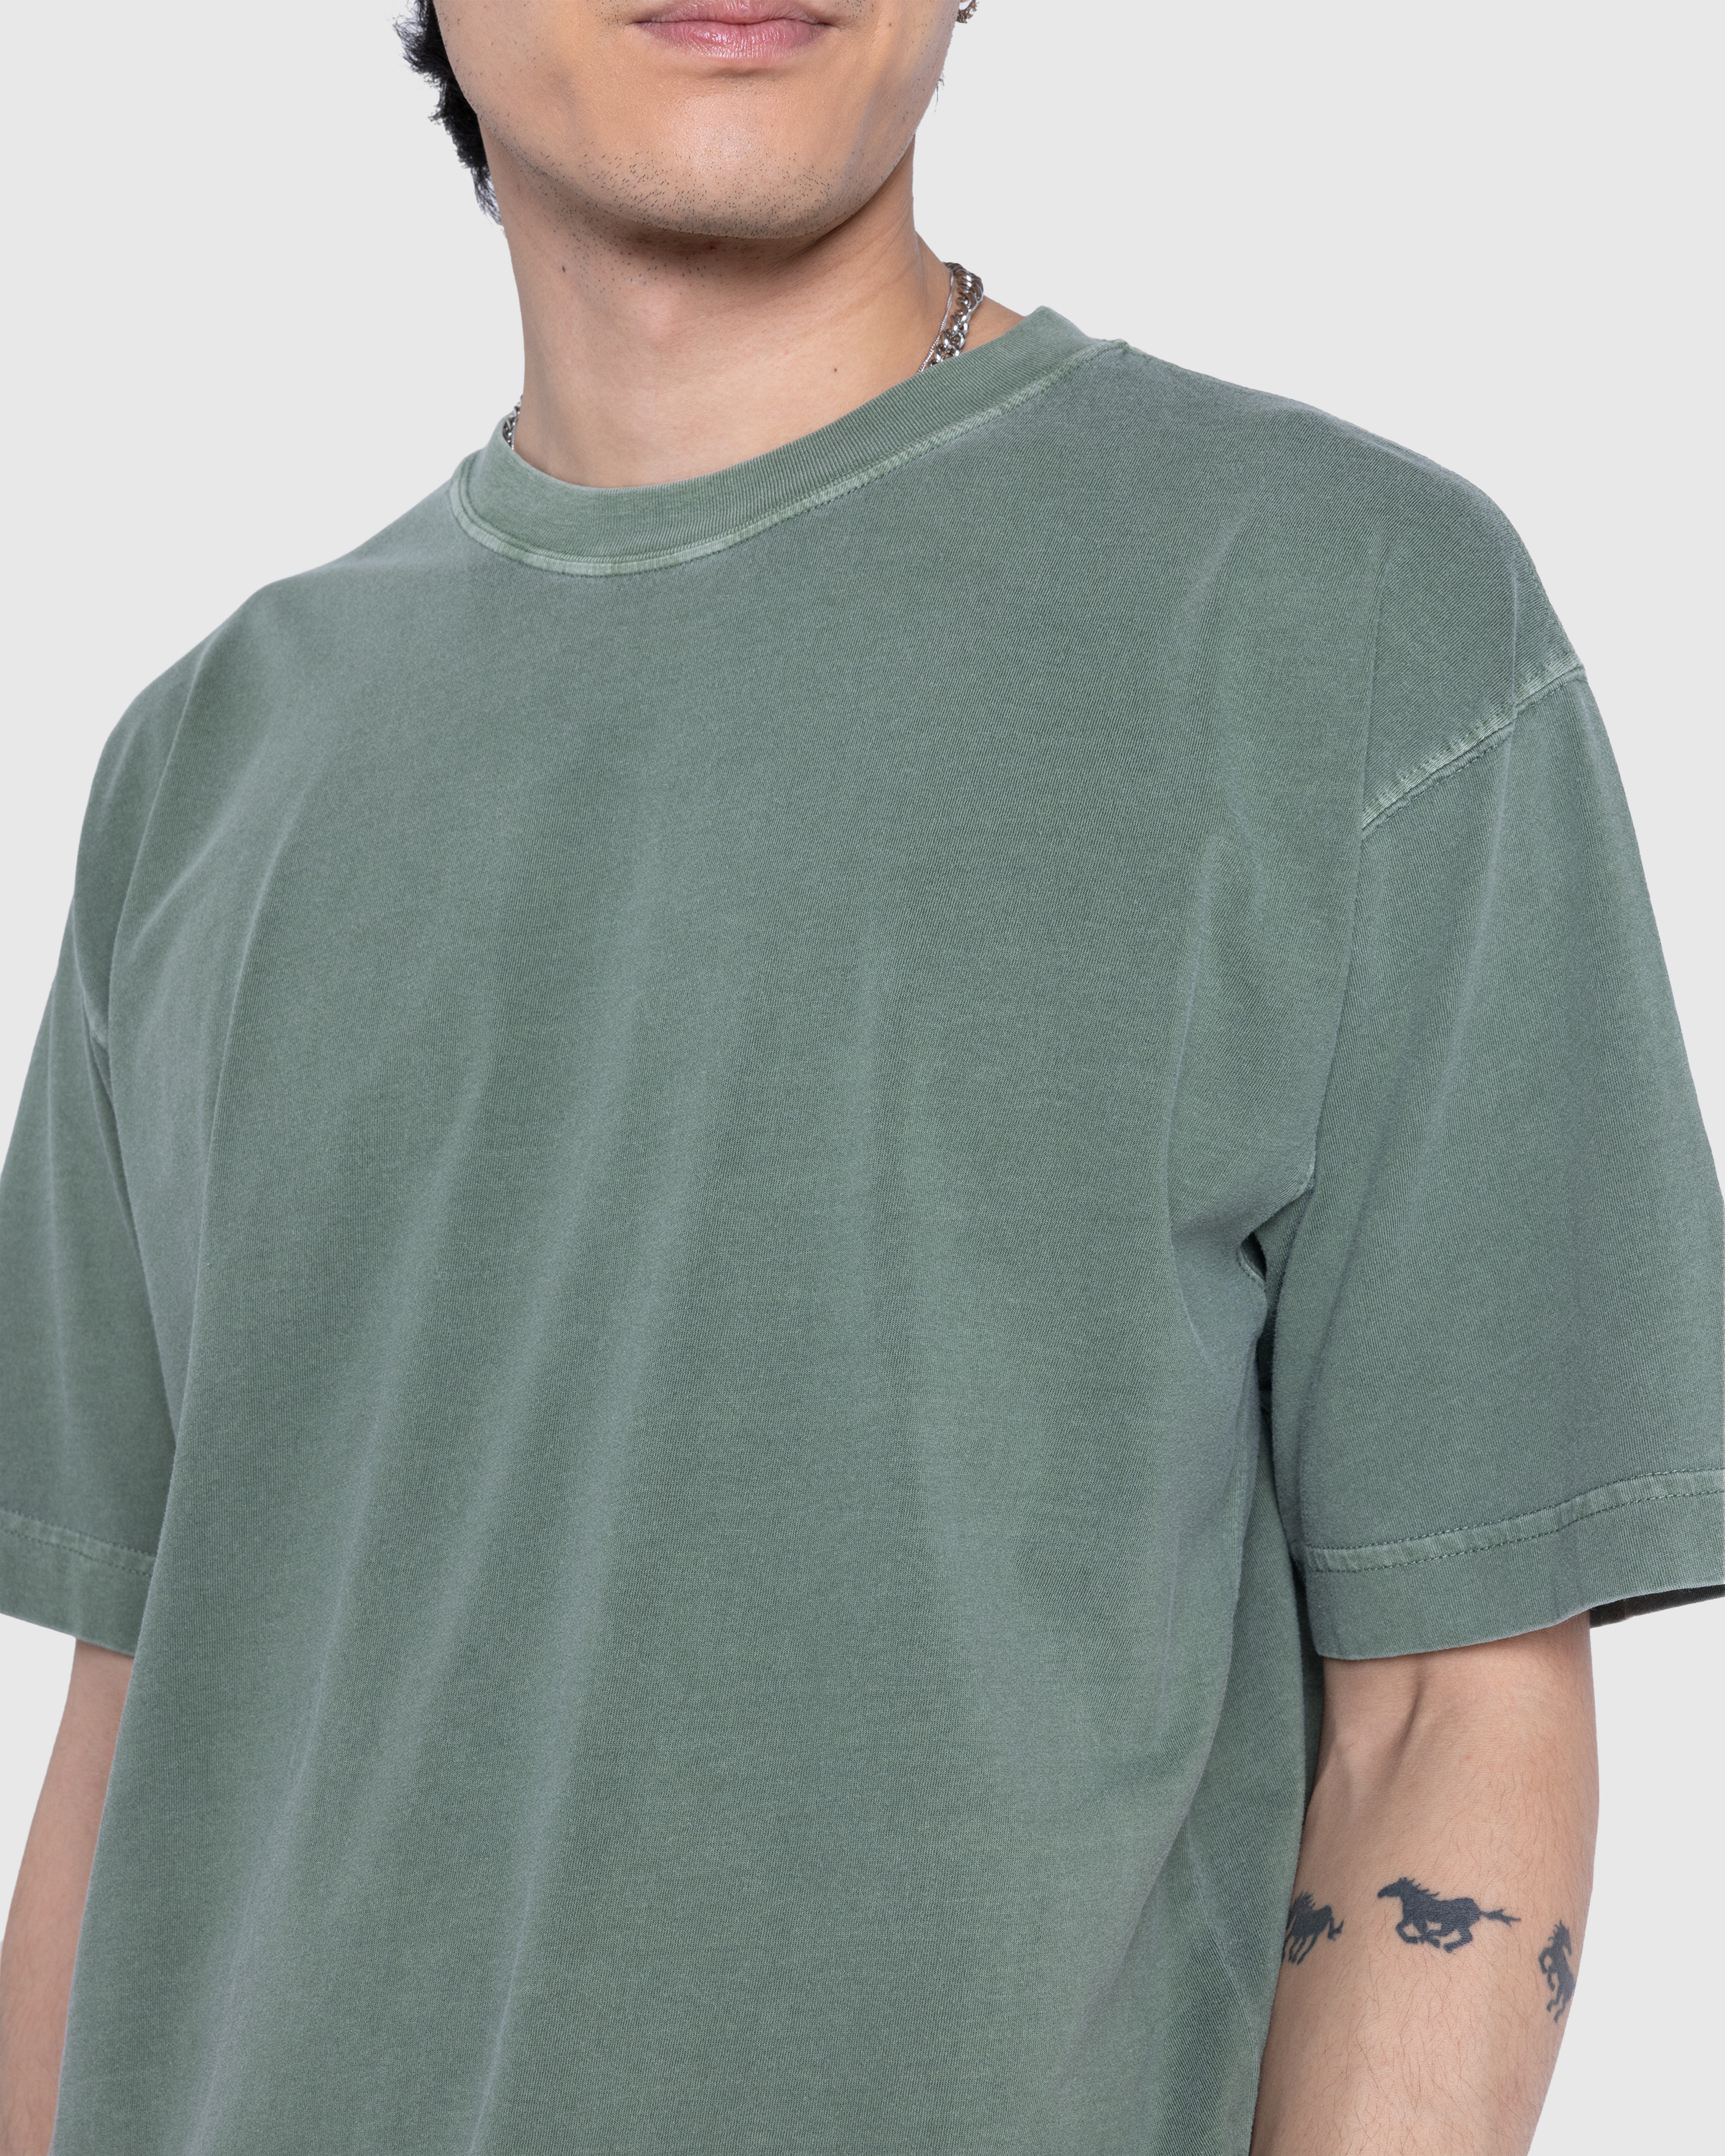 Carhartt WIP – Dune T-Shirt Park/Garment Dyed - Tops - Green - Image 5